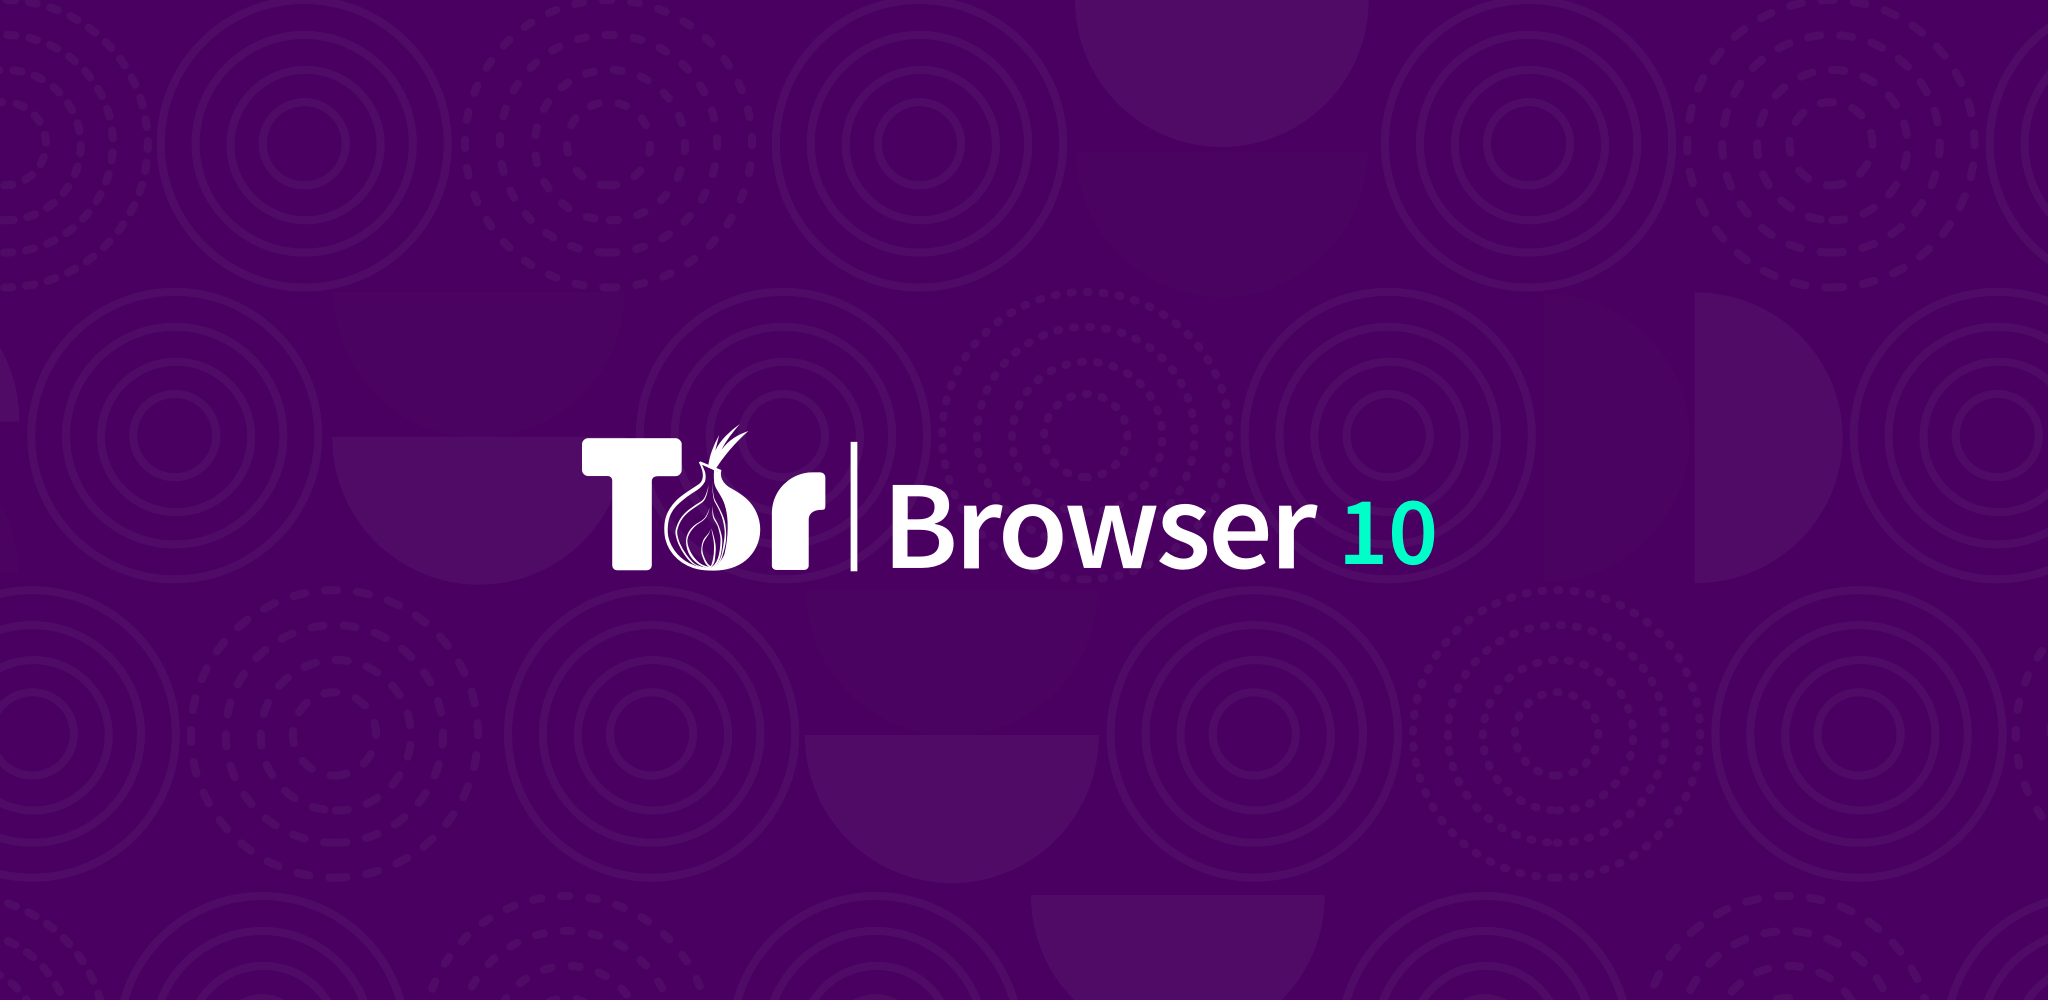 скачать tor browser предыдущие версии